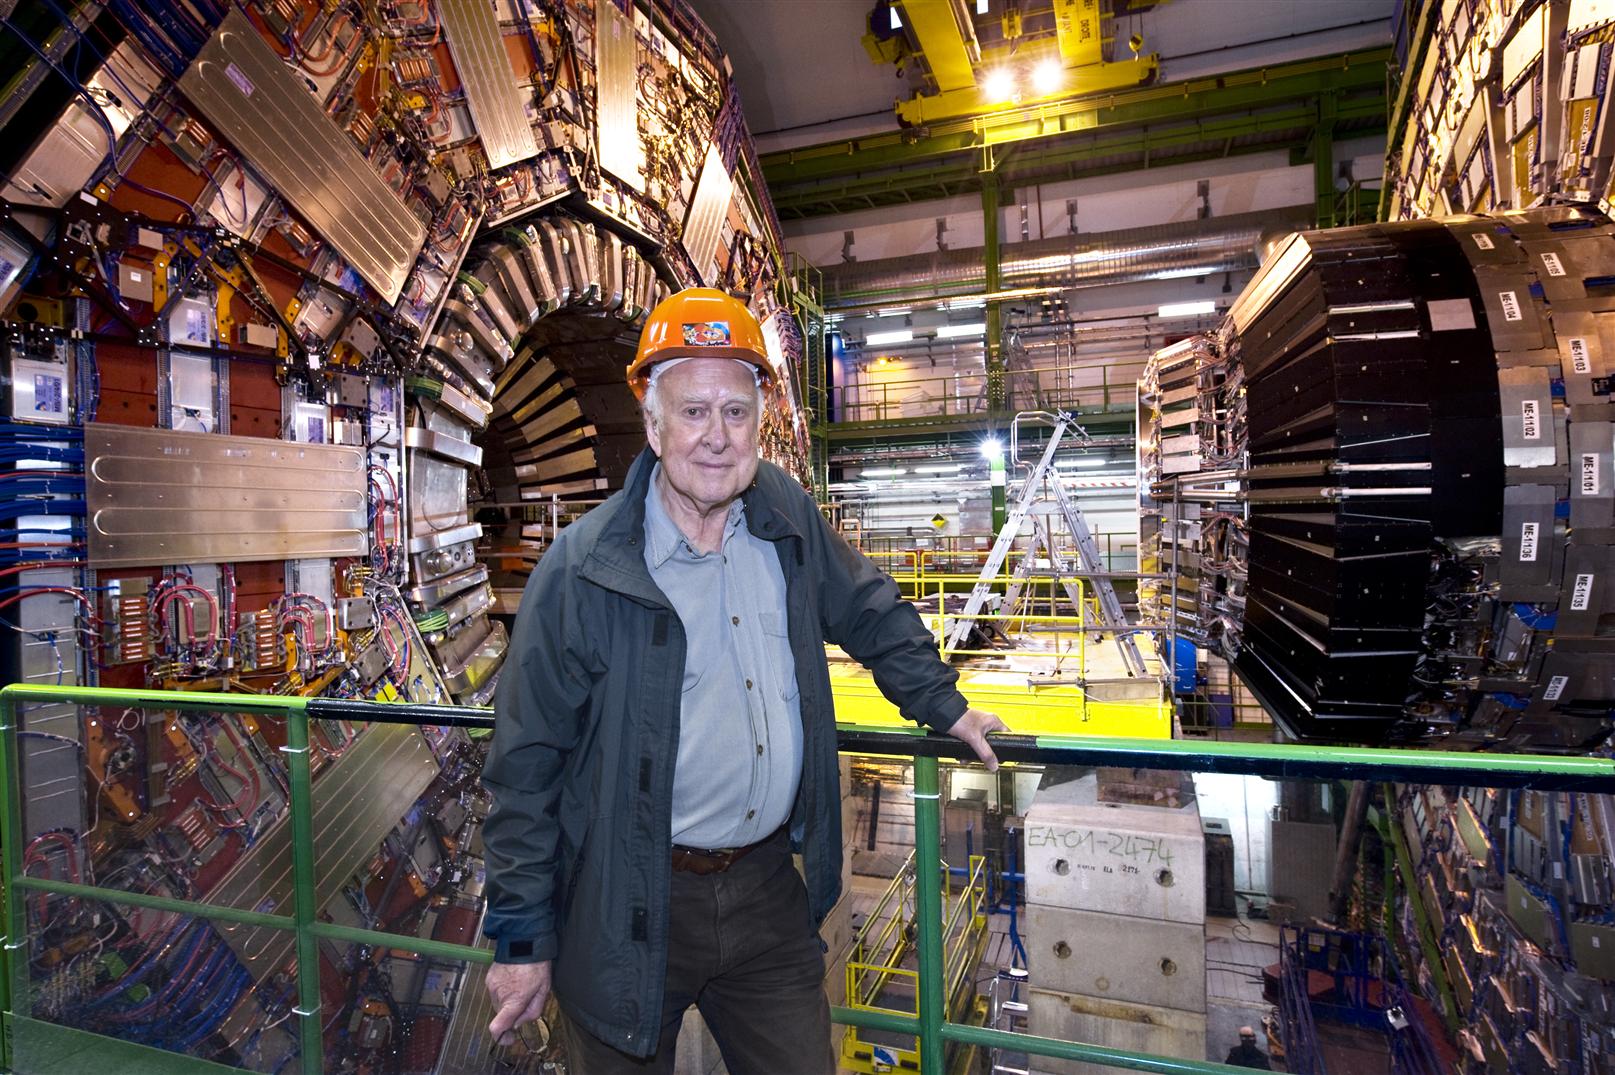 Peter Higgs devant le détecteur CMS au Cern. Celui-ci semble bel et bien avoir détecté le boson de Higgs mais pour le moment aucun leptoquark. © Maximilien Brice-Cern 